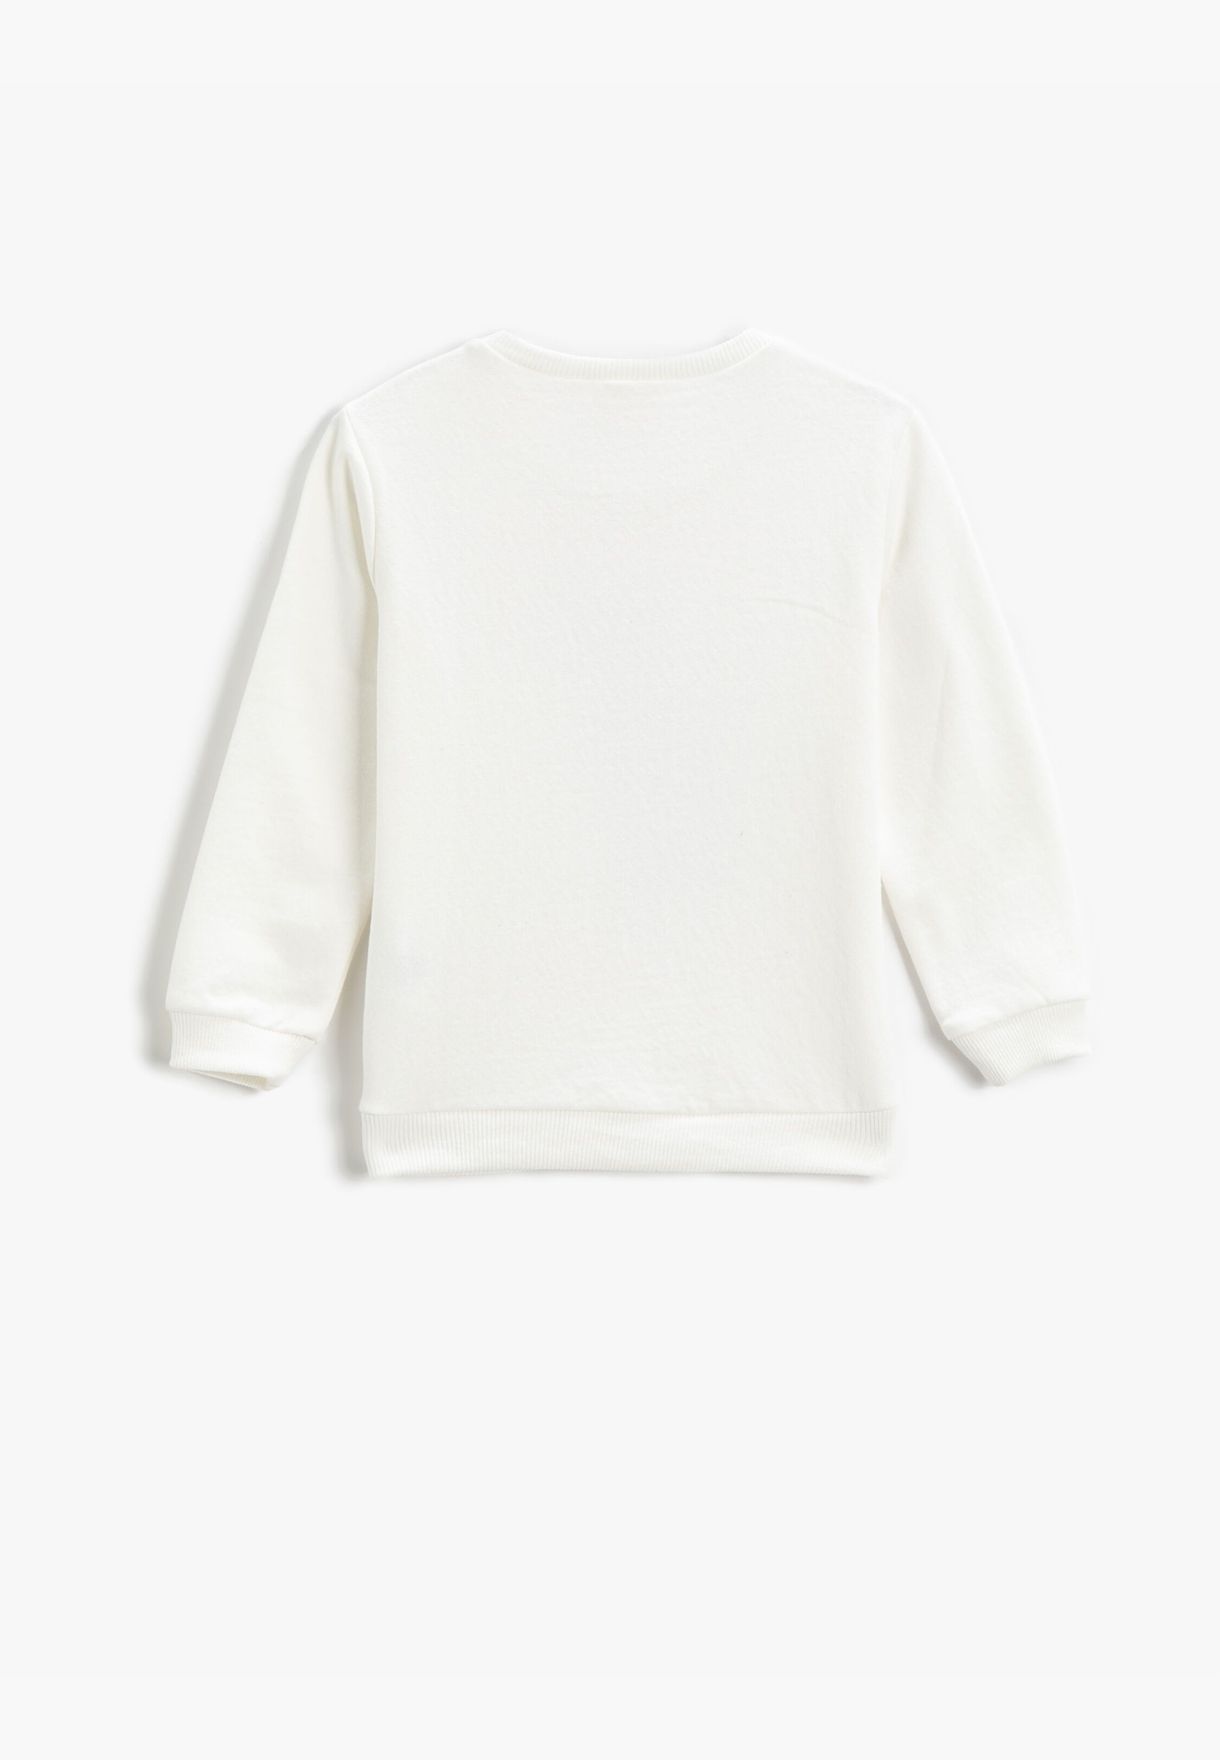 Printed Sweatshirt Long Sleeve